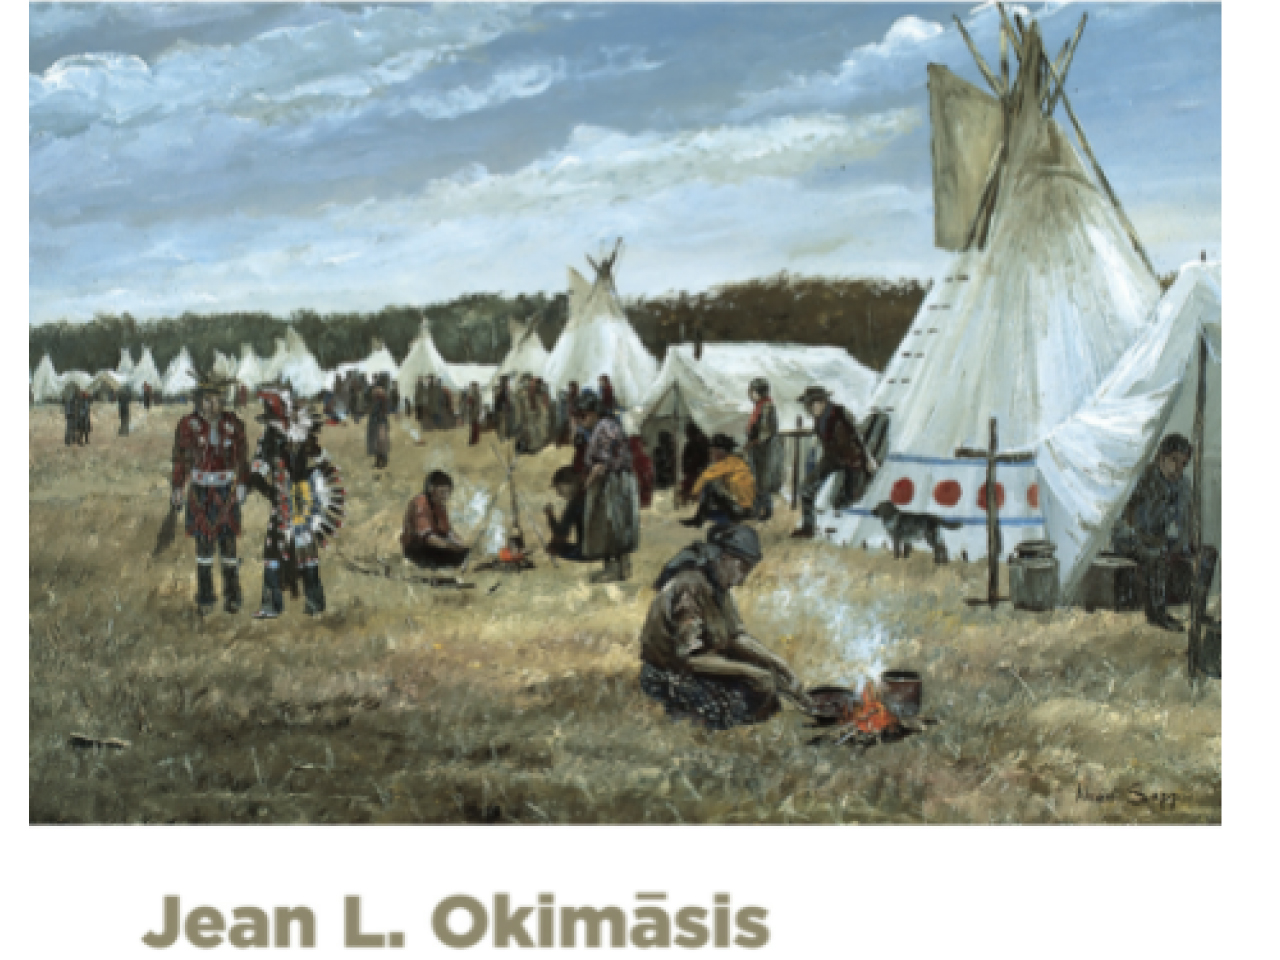 Cree, language of the Plains = nēhiyawēwin, paskwāwi-pīkiskwēwin